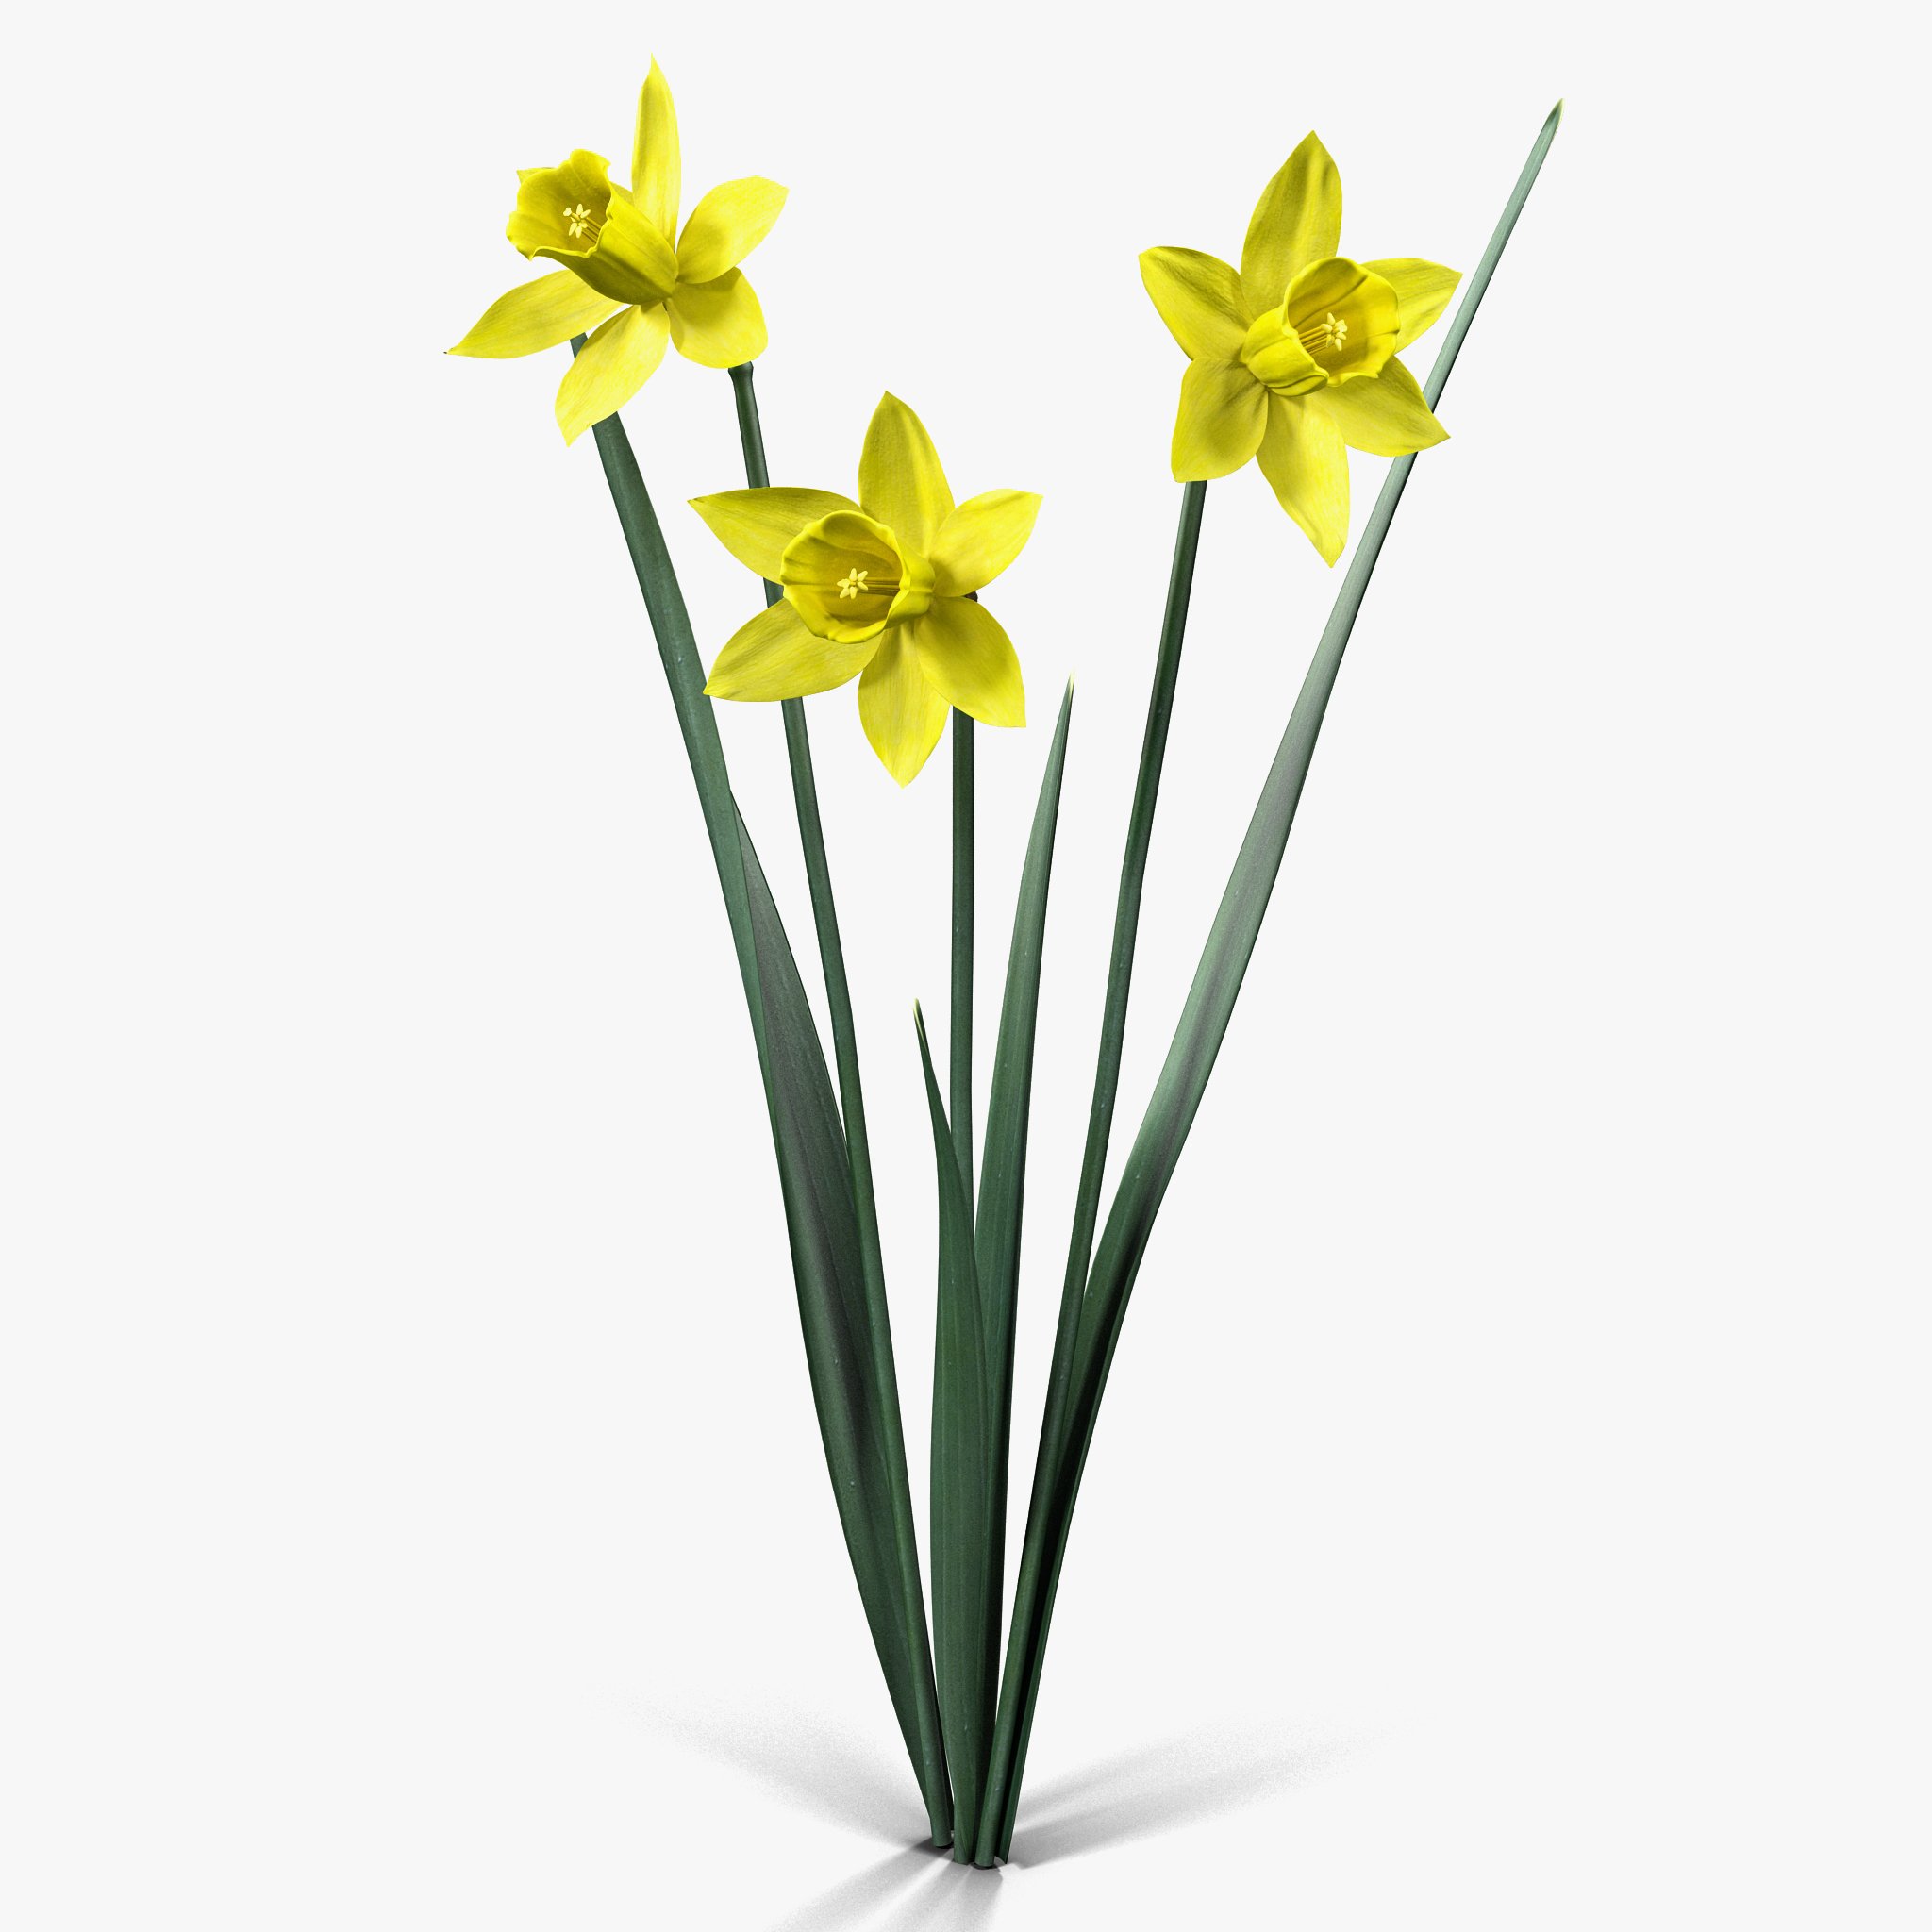 Игла нарцисса. Нарцисс цветок. Нарцисс Карлтон (d-12). Нарцисс растение побег. Цветонос нарцисса.